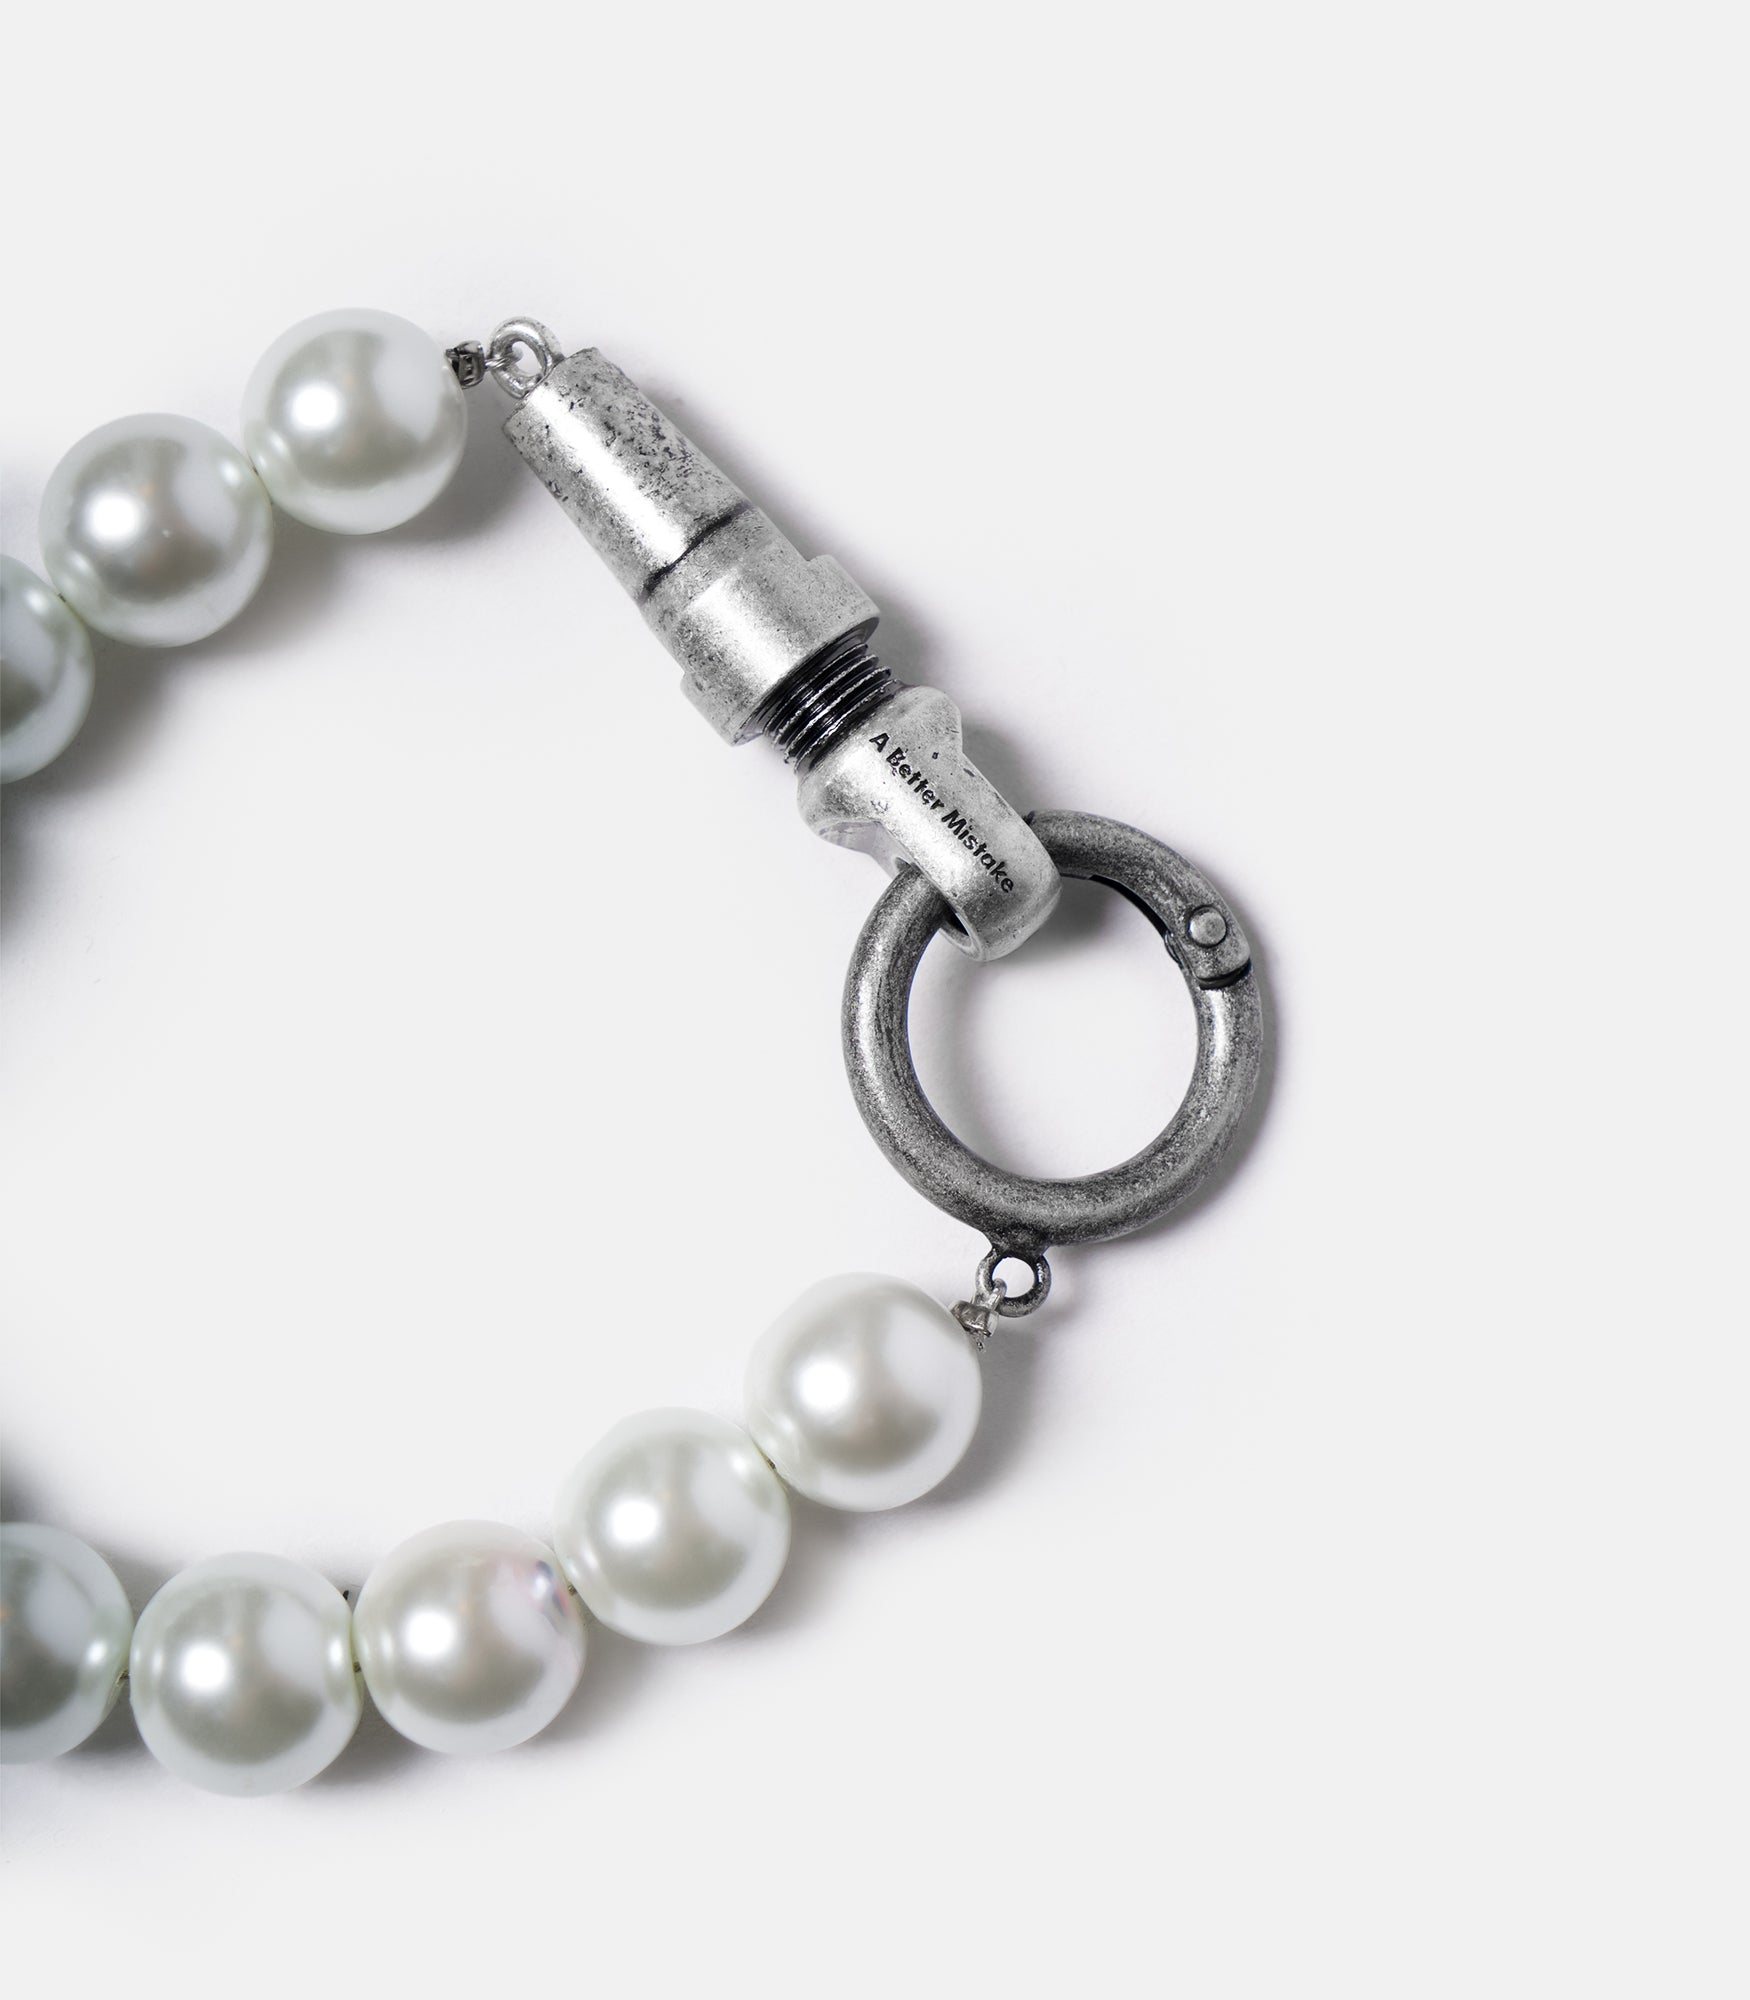 Modular Pearl Bracelet